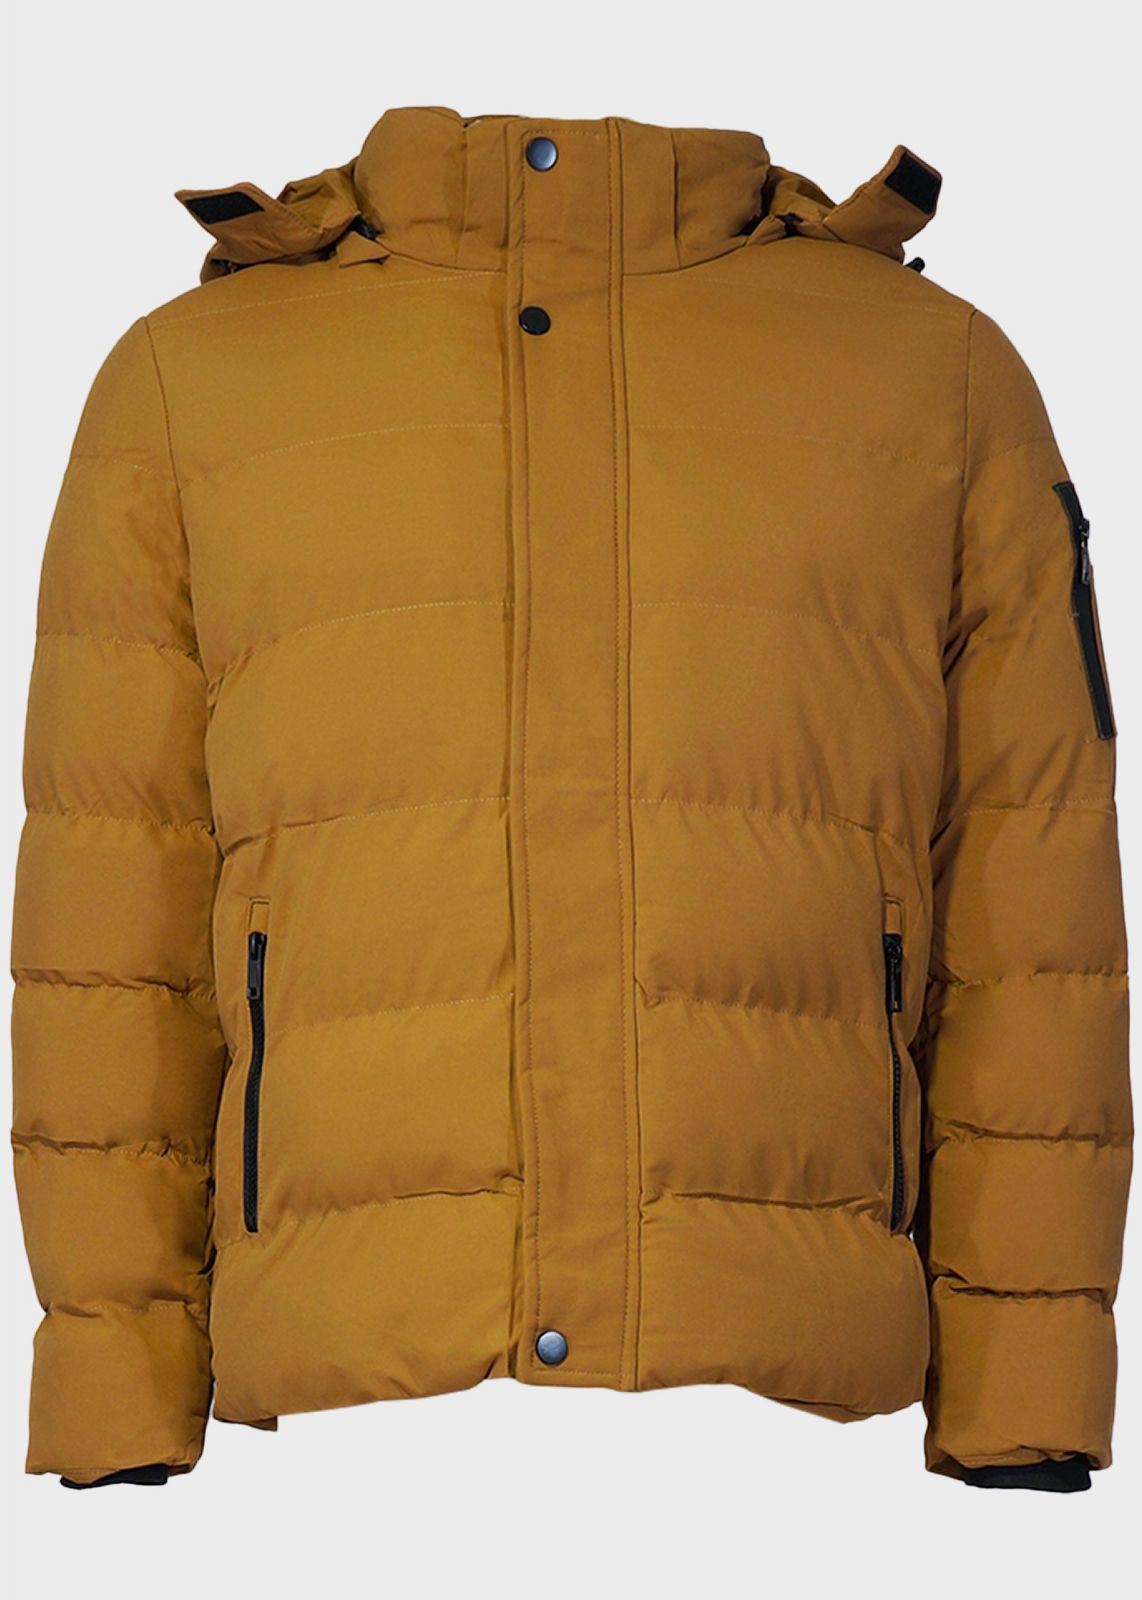 Ανδρικό χειμερινό μπουφάν τσέπες φερμουάρ επένδυση αποσπώμενη κουκούλα ΚΑΜΕΛ